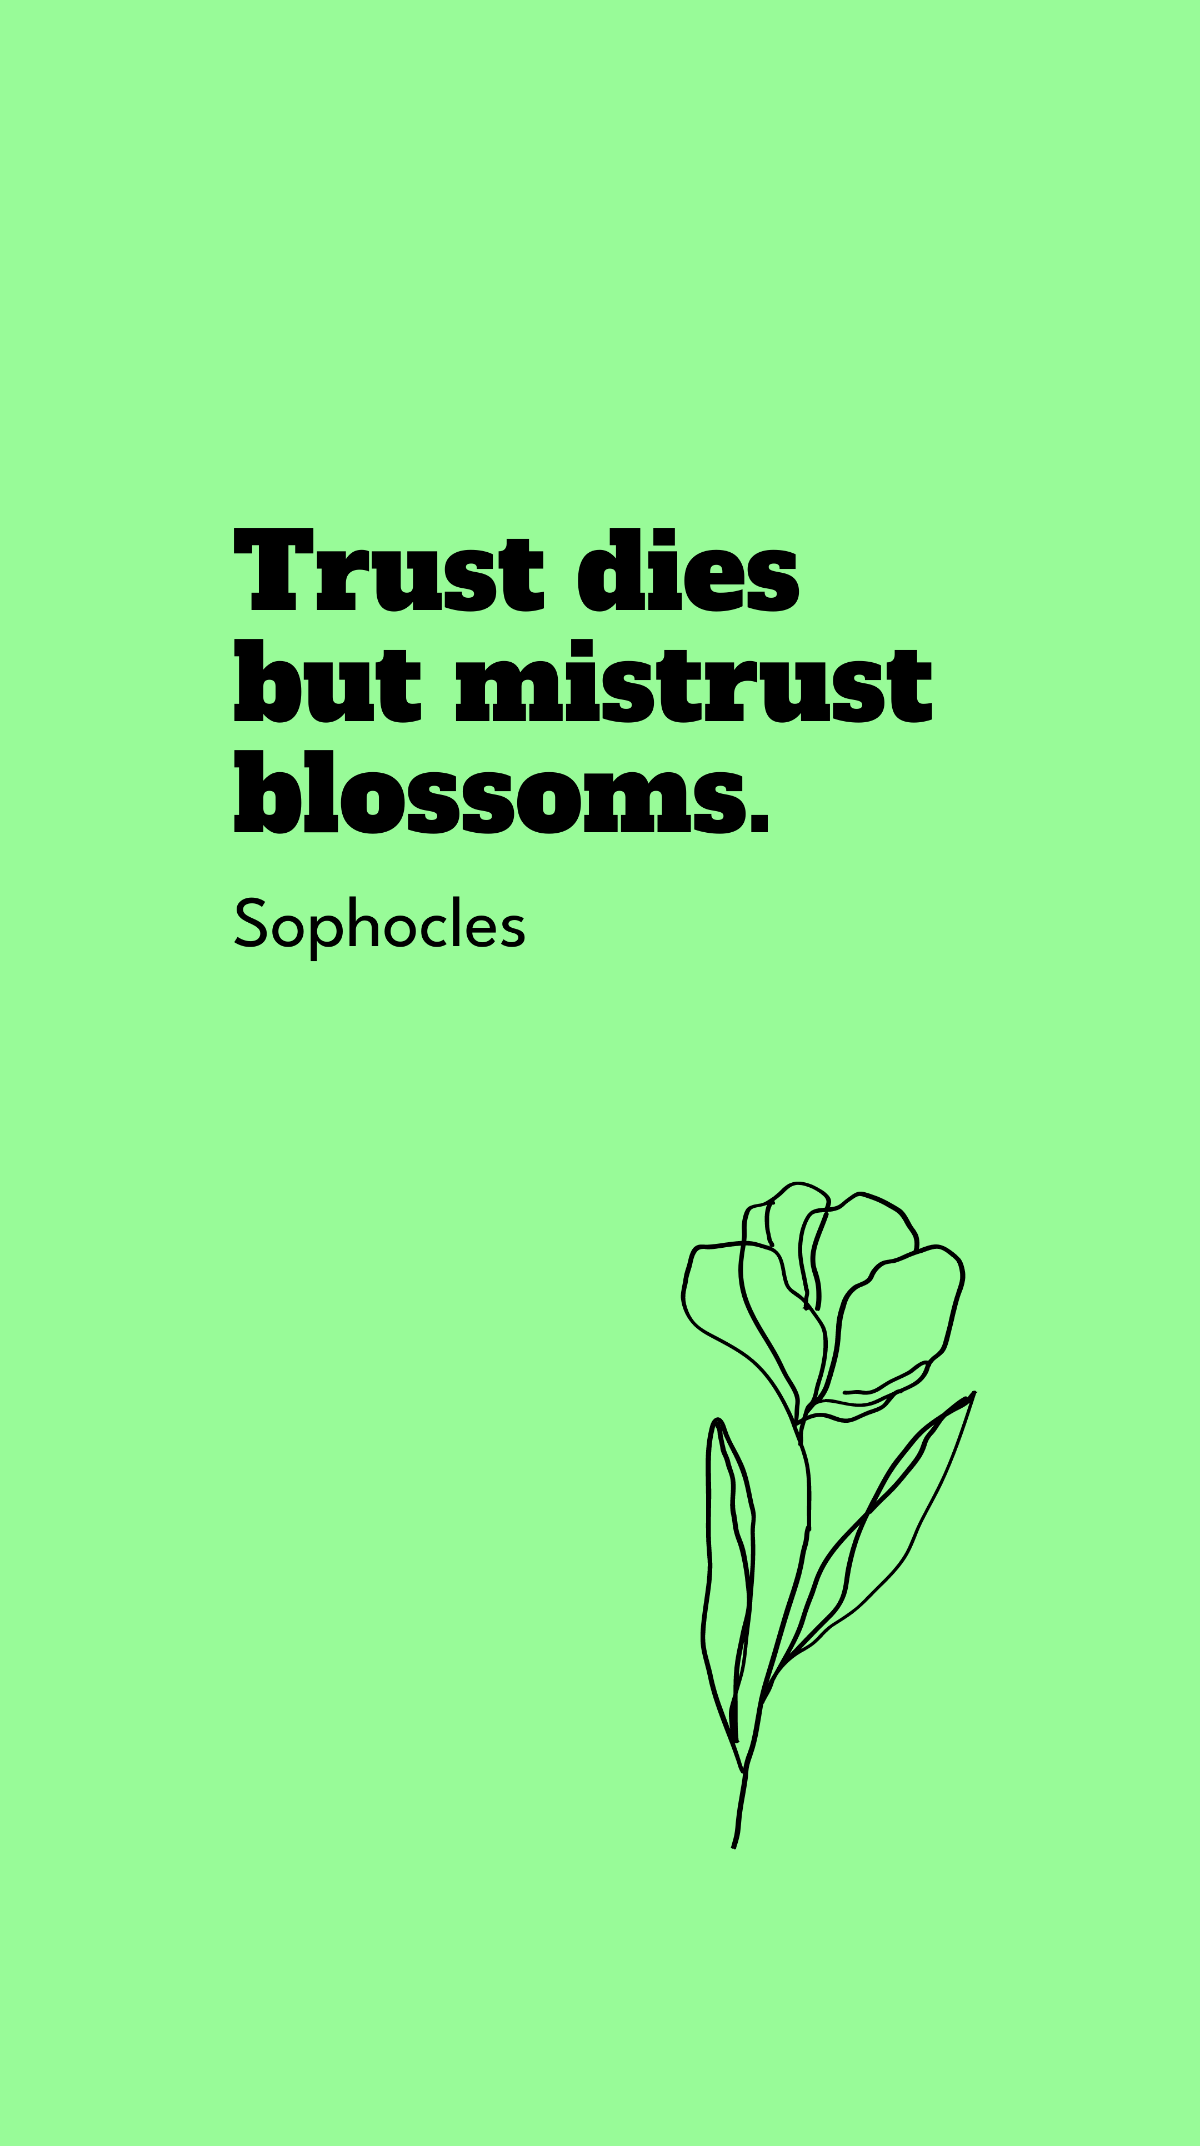 Sophocles - Trust dies but mistrust blossoms. Template